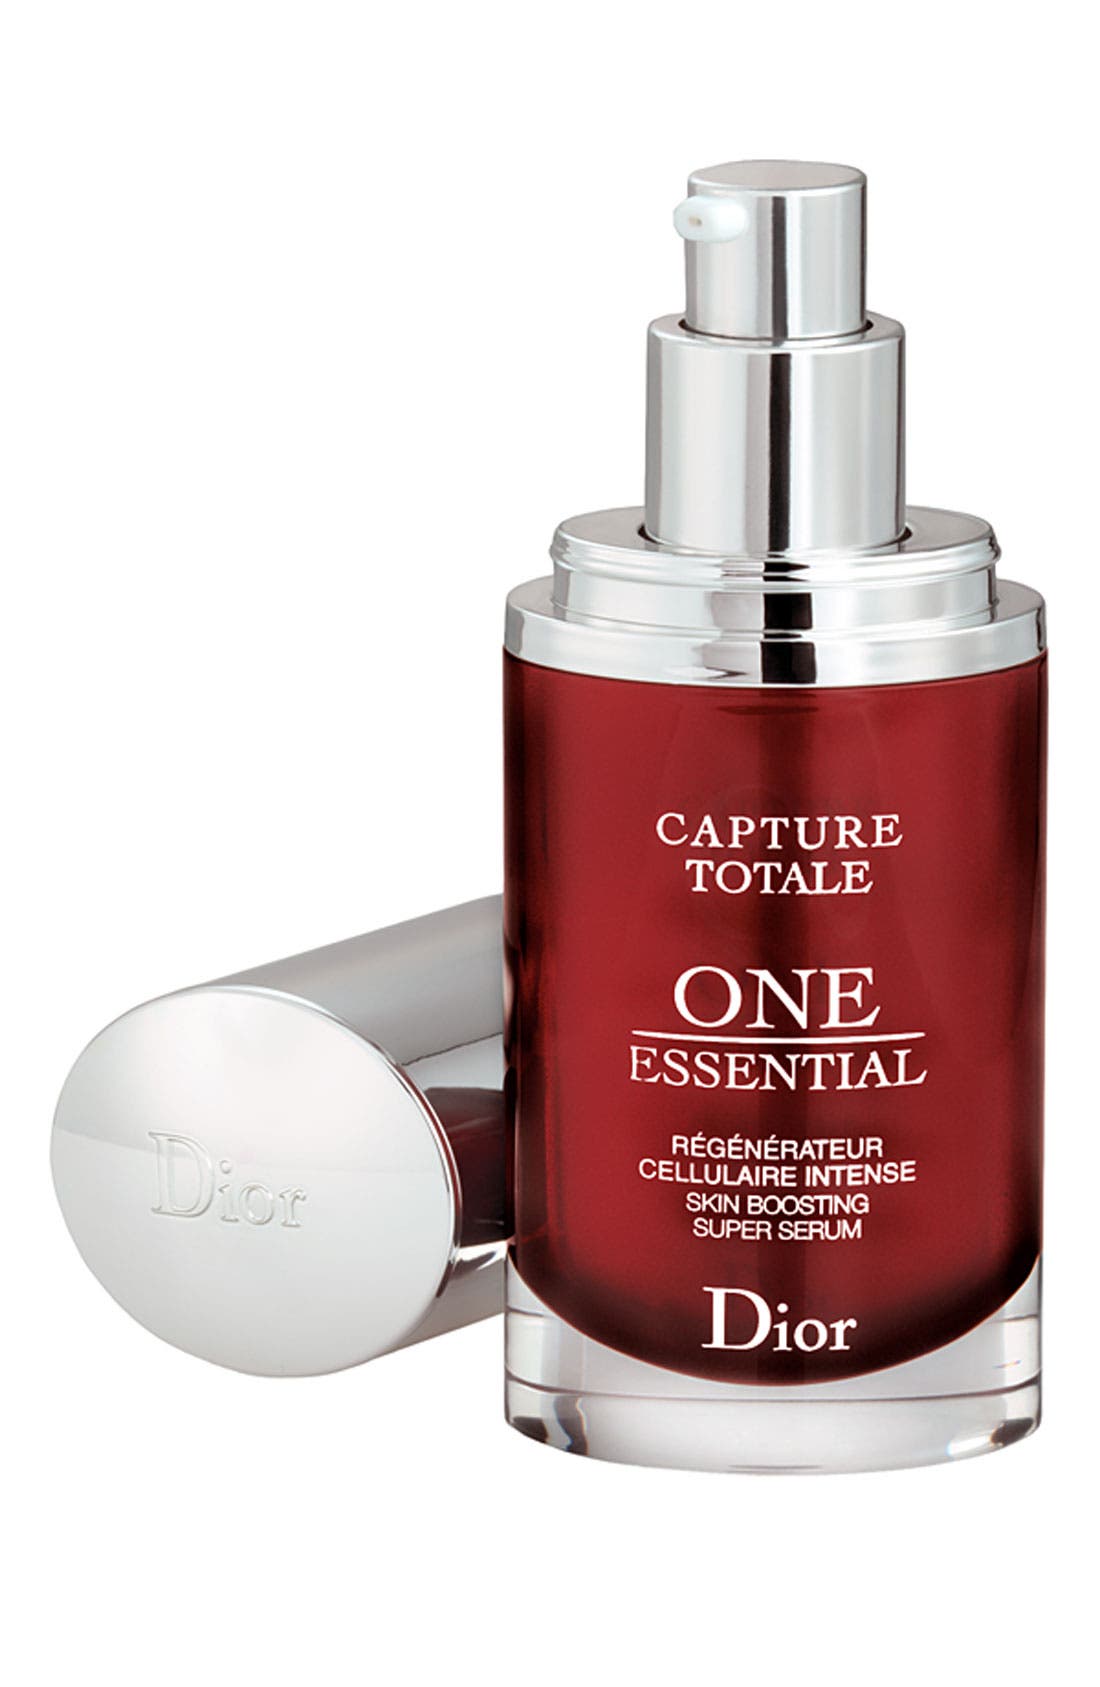 one essential skin boosting super serum dior precio